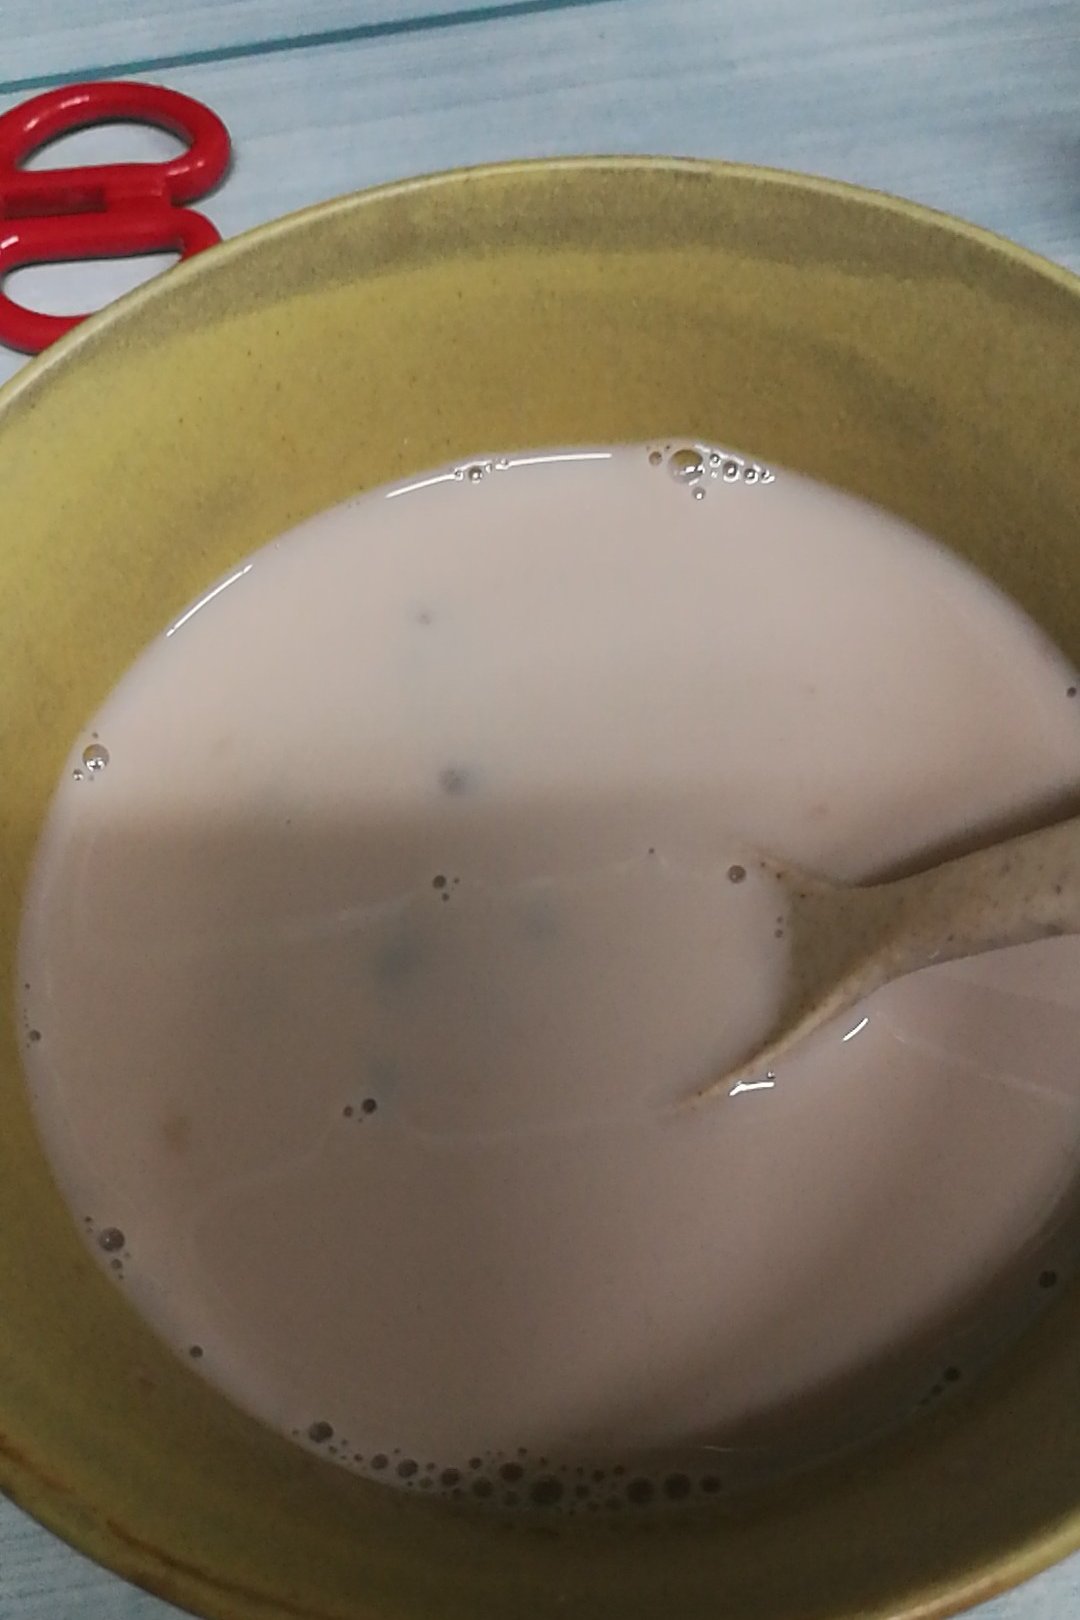 红枣红豆薏仁牛奶粥